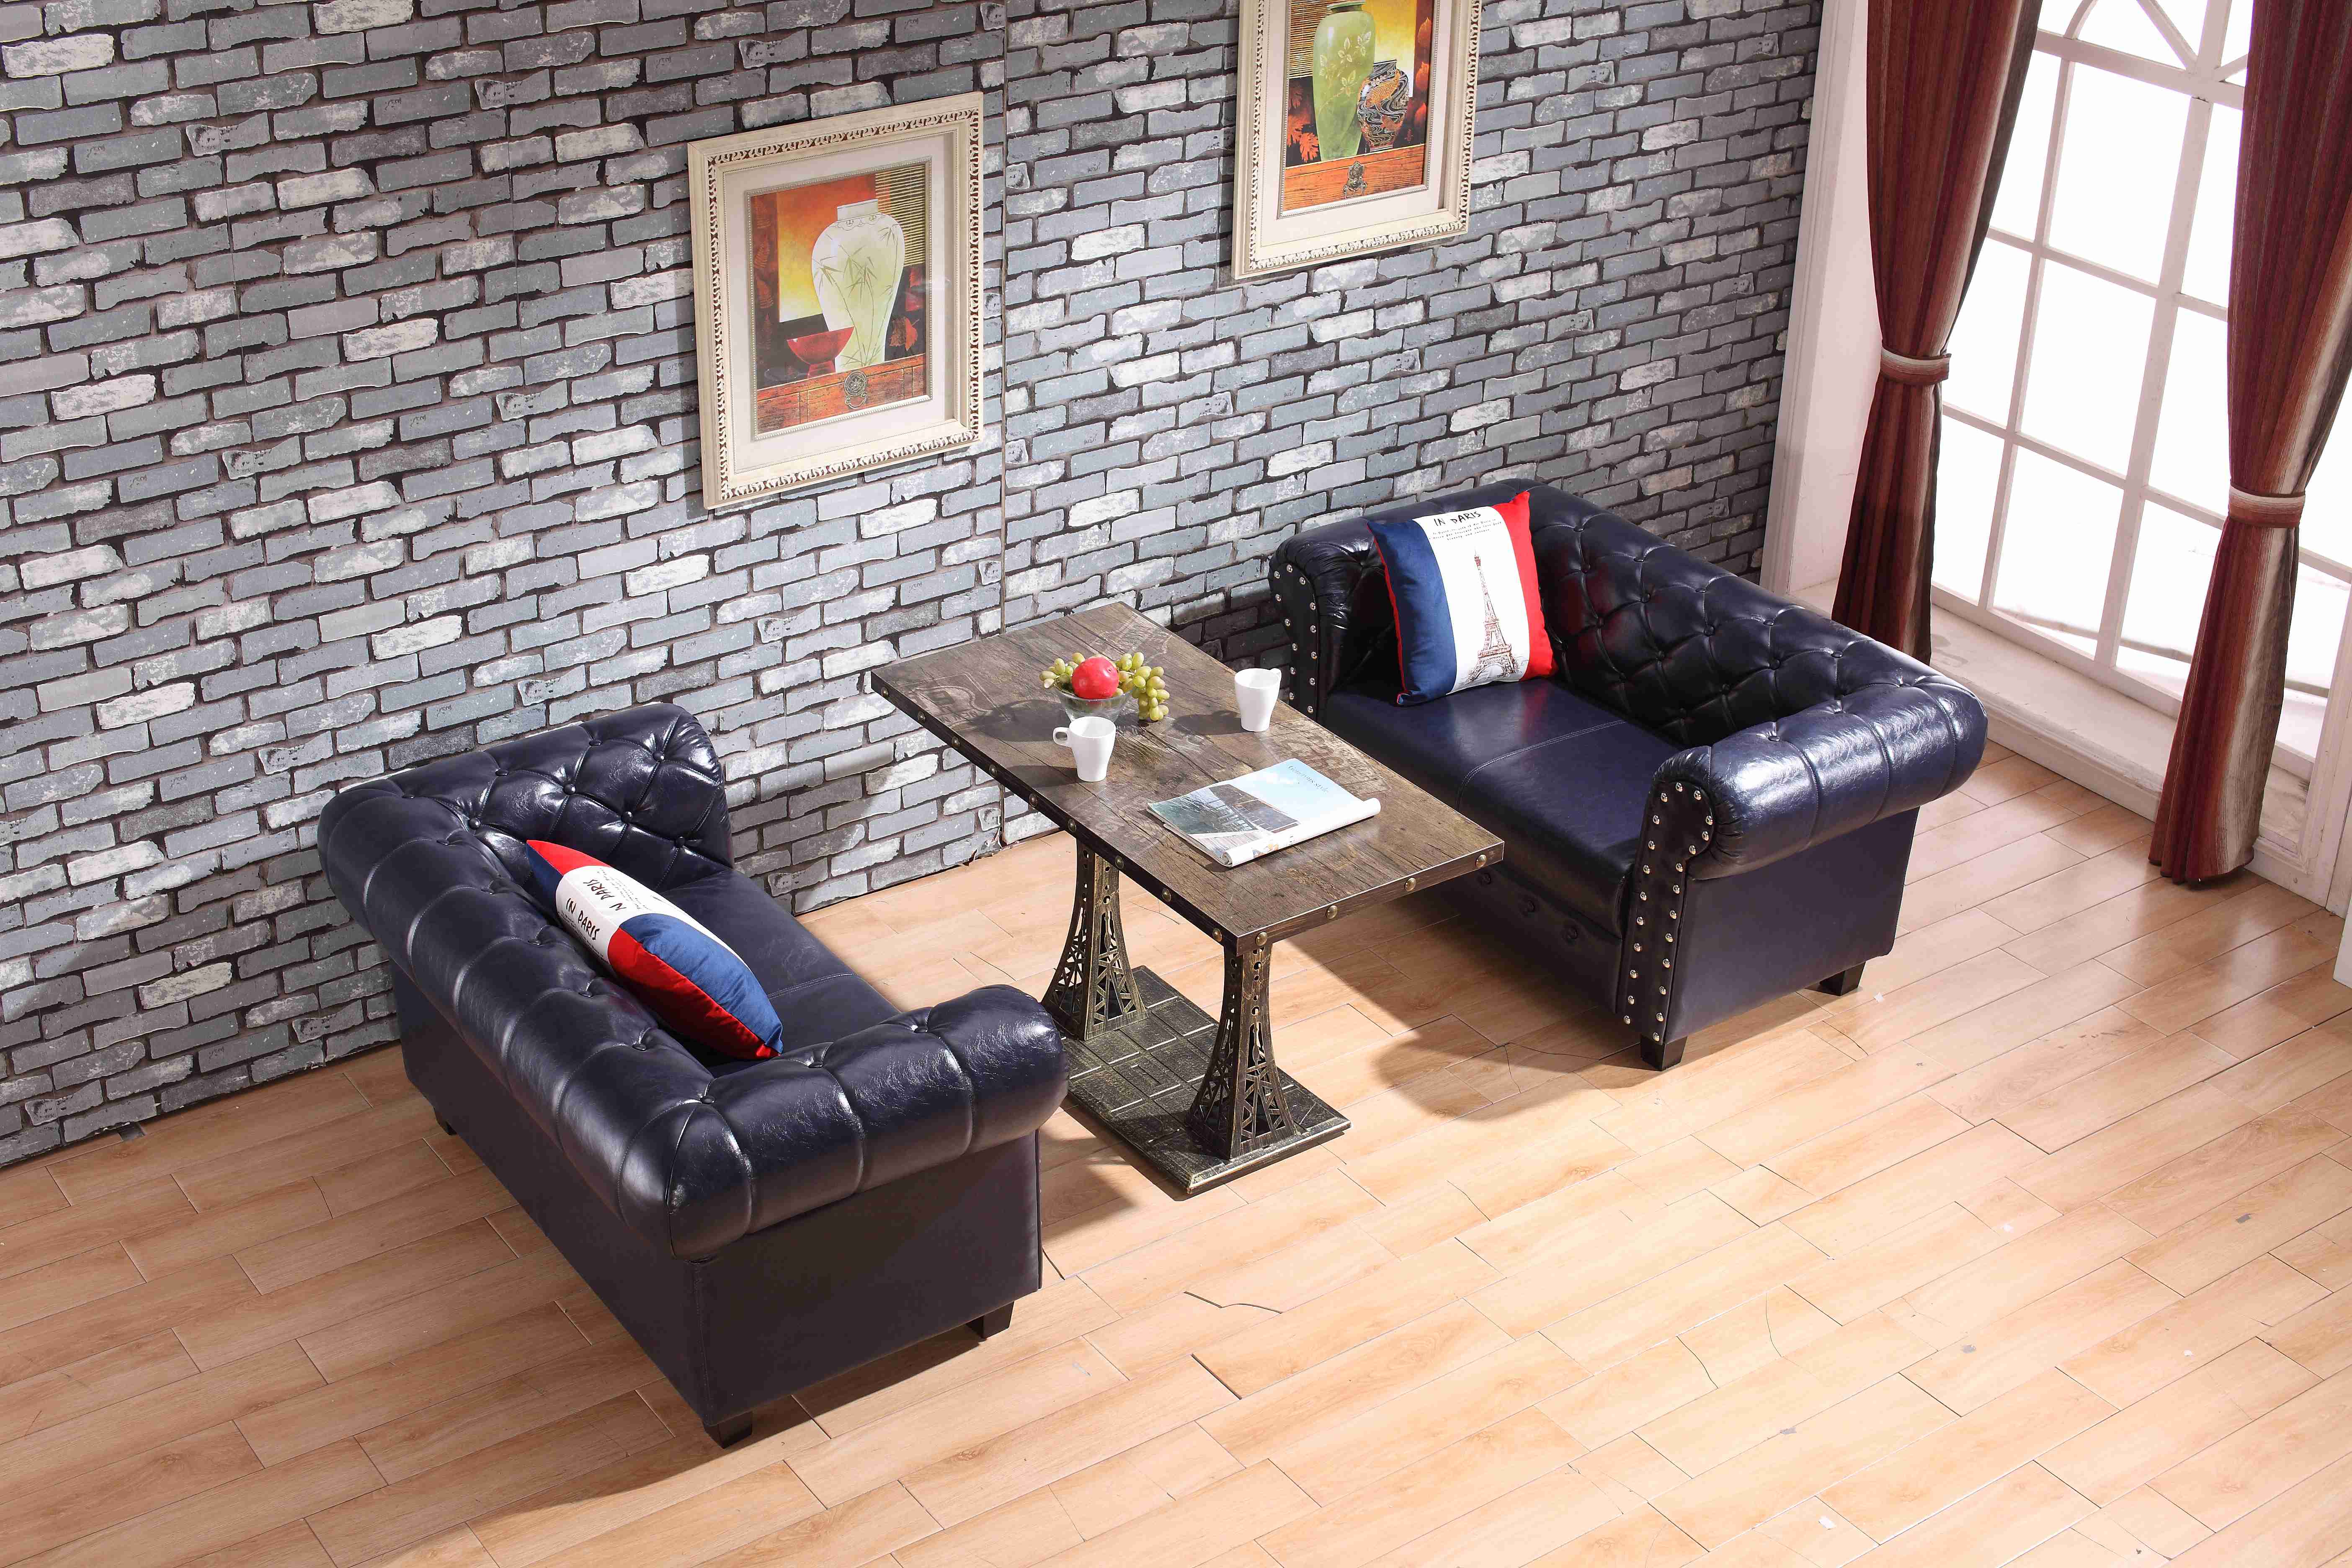 厂家美式复古沙发直销咖啡厅美式铆钉沙发定制沙发桌椅组合厂家直销咖啡厅美式沙发桌椅组合图片